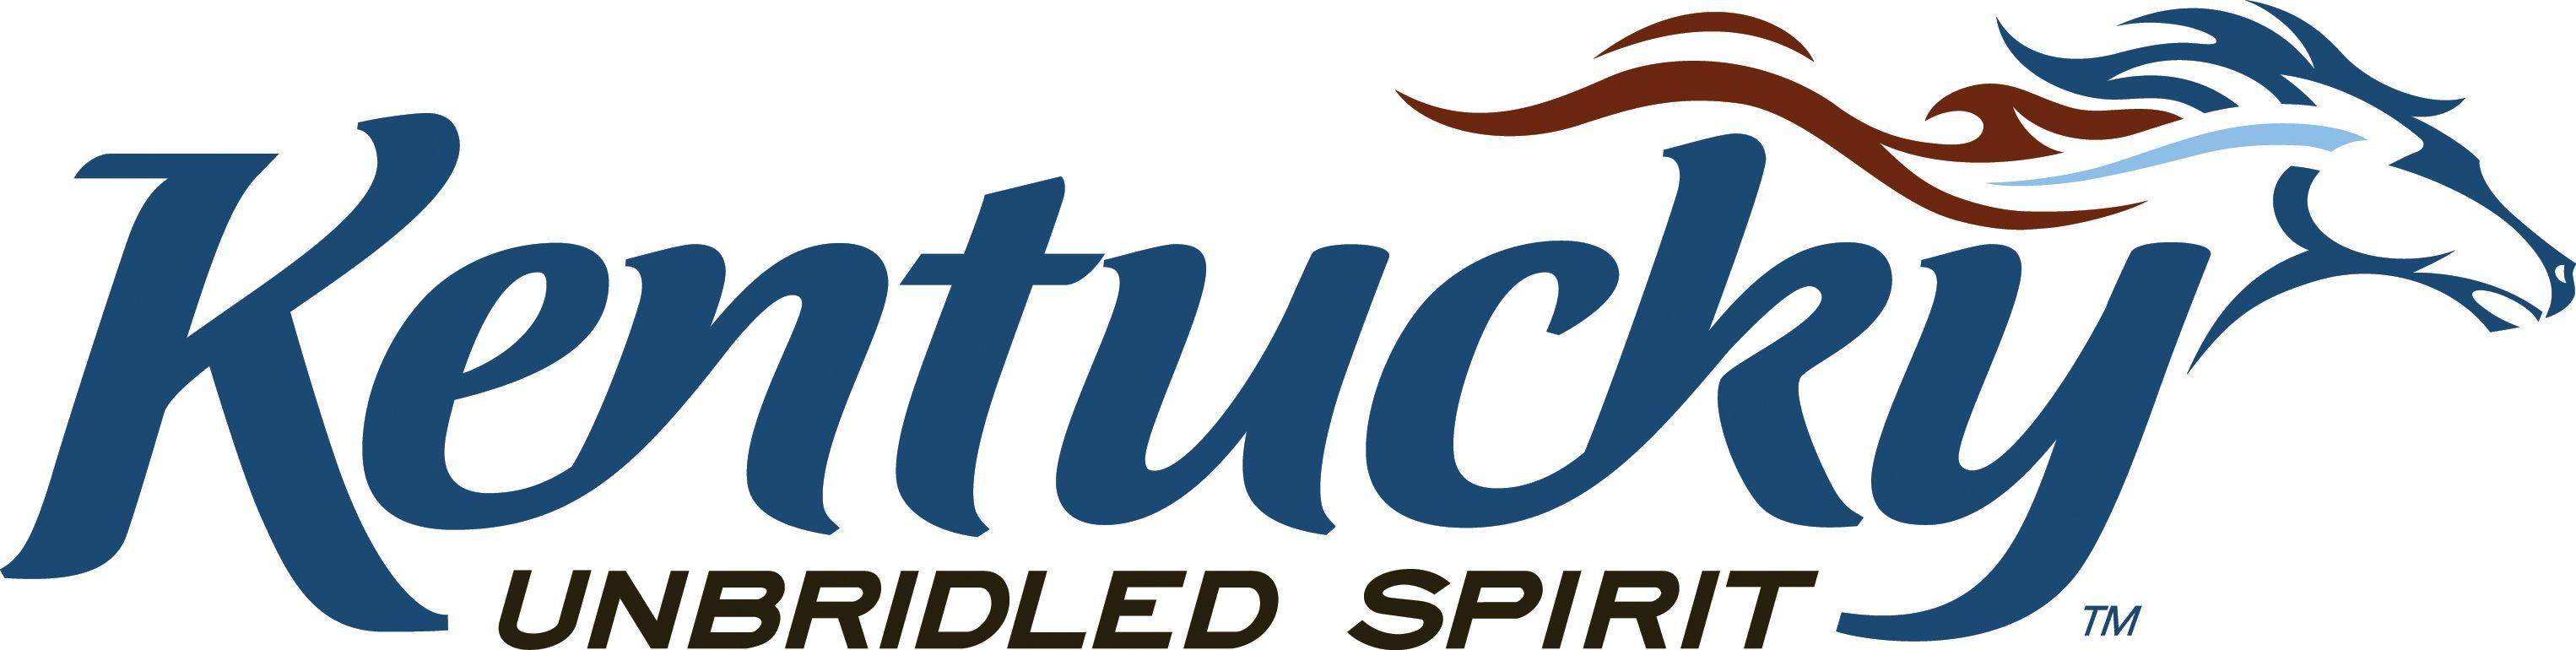 Kentucky Logo - Kentucky Unbridled Spirit Logo Use